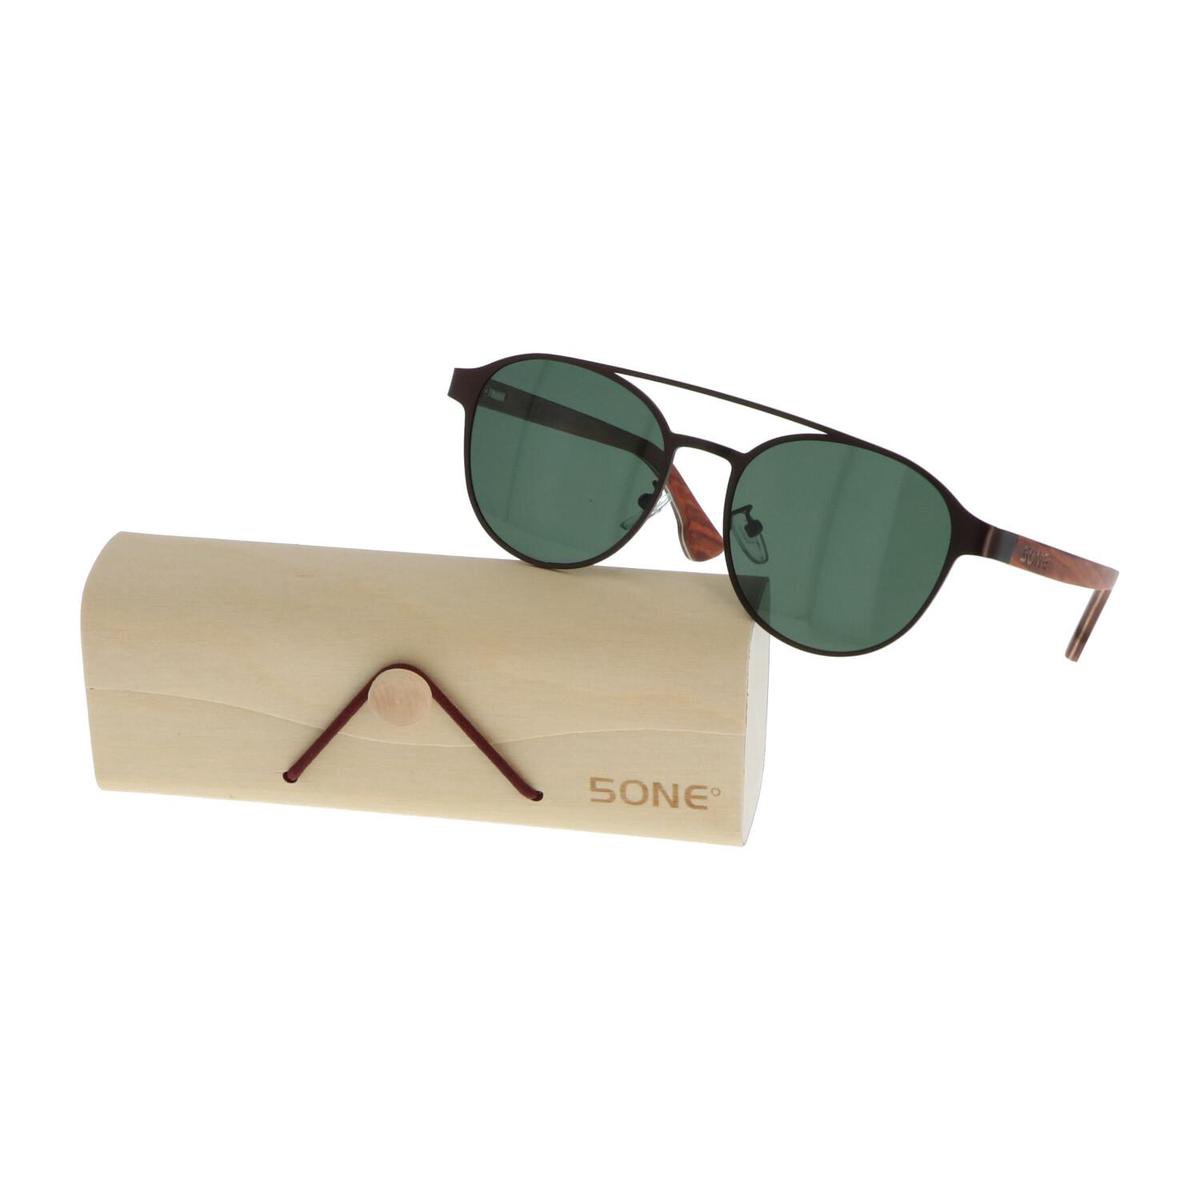 5one® Amalfi 2.0 - Zonnebril met houten poten met groene G15 lens